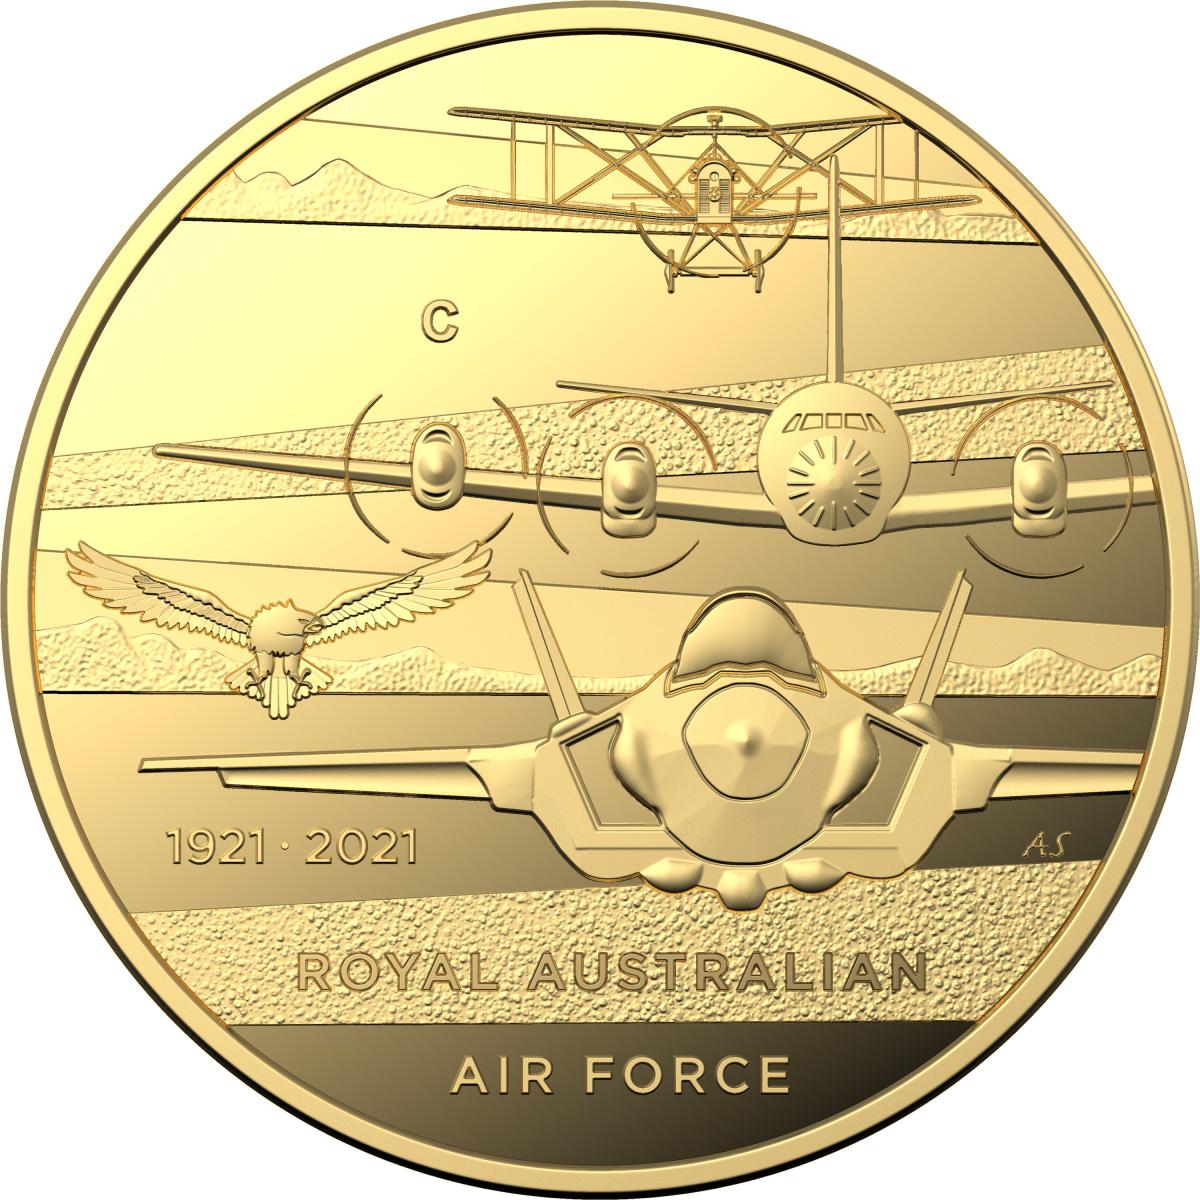 Australia: RAAF centenary coins, "Heroe of the skies"